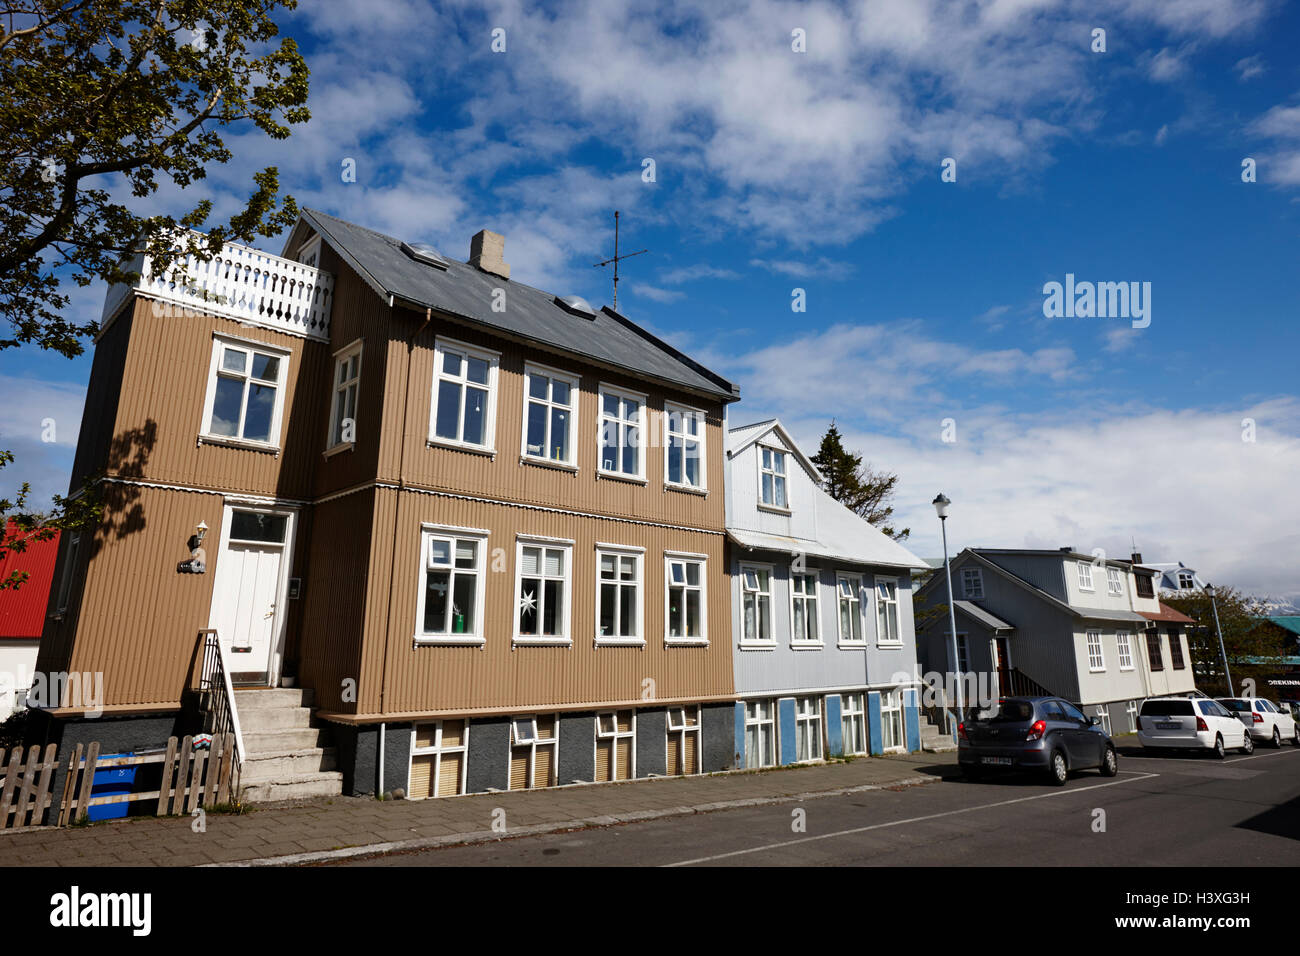 Tôle ondulée peinte maisons recouvertes d'étain dans un quartier résidentiel à Reykjavik Islande Banque D'Images